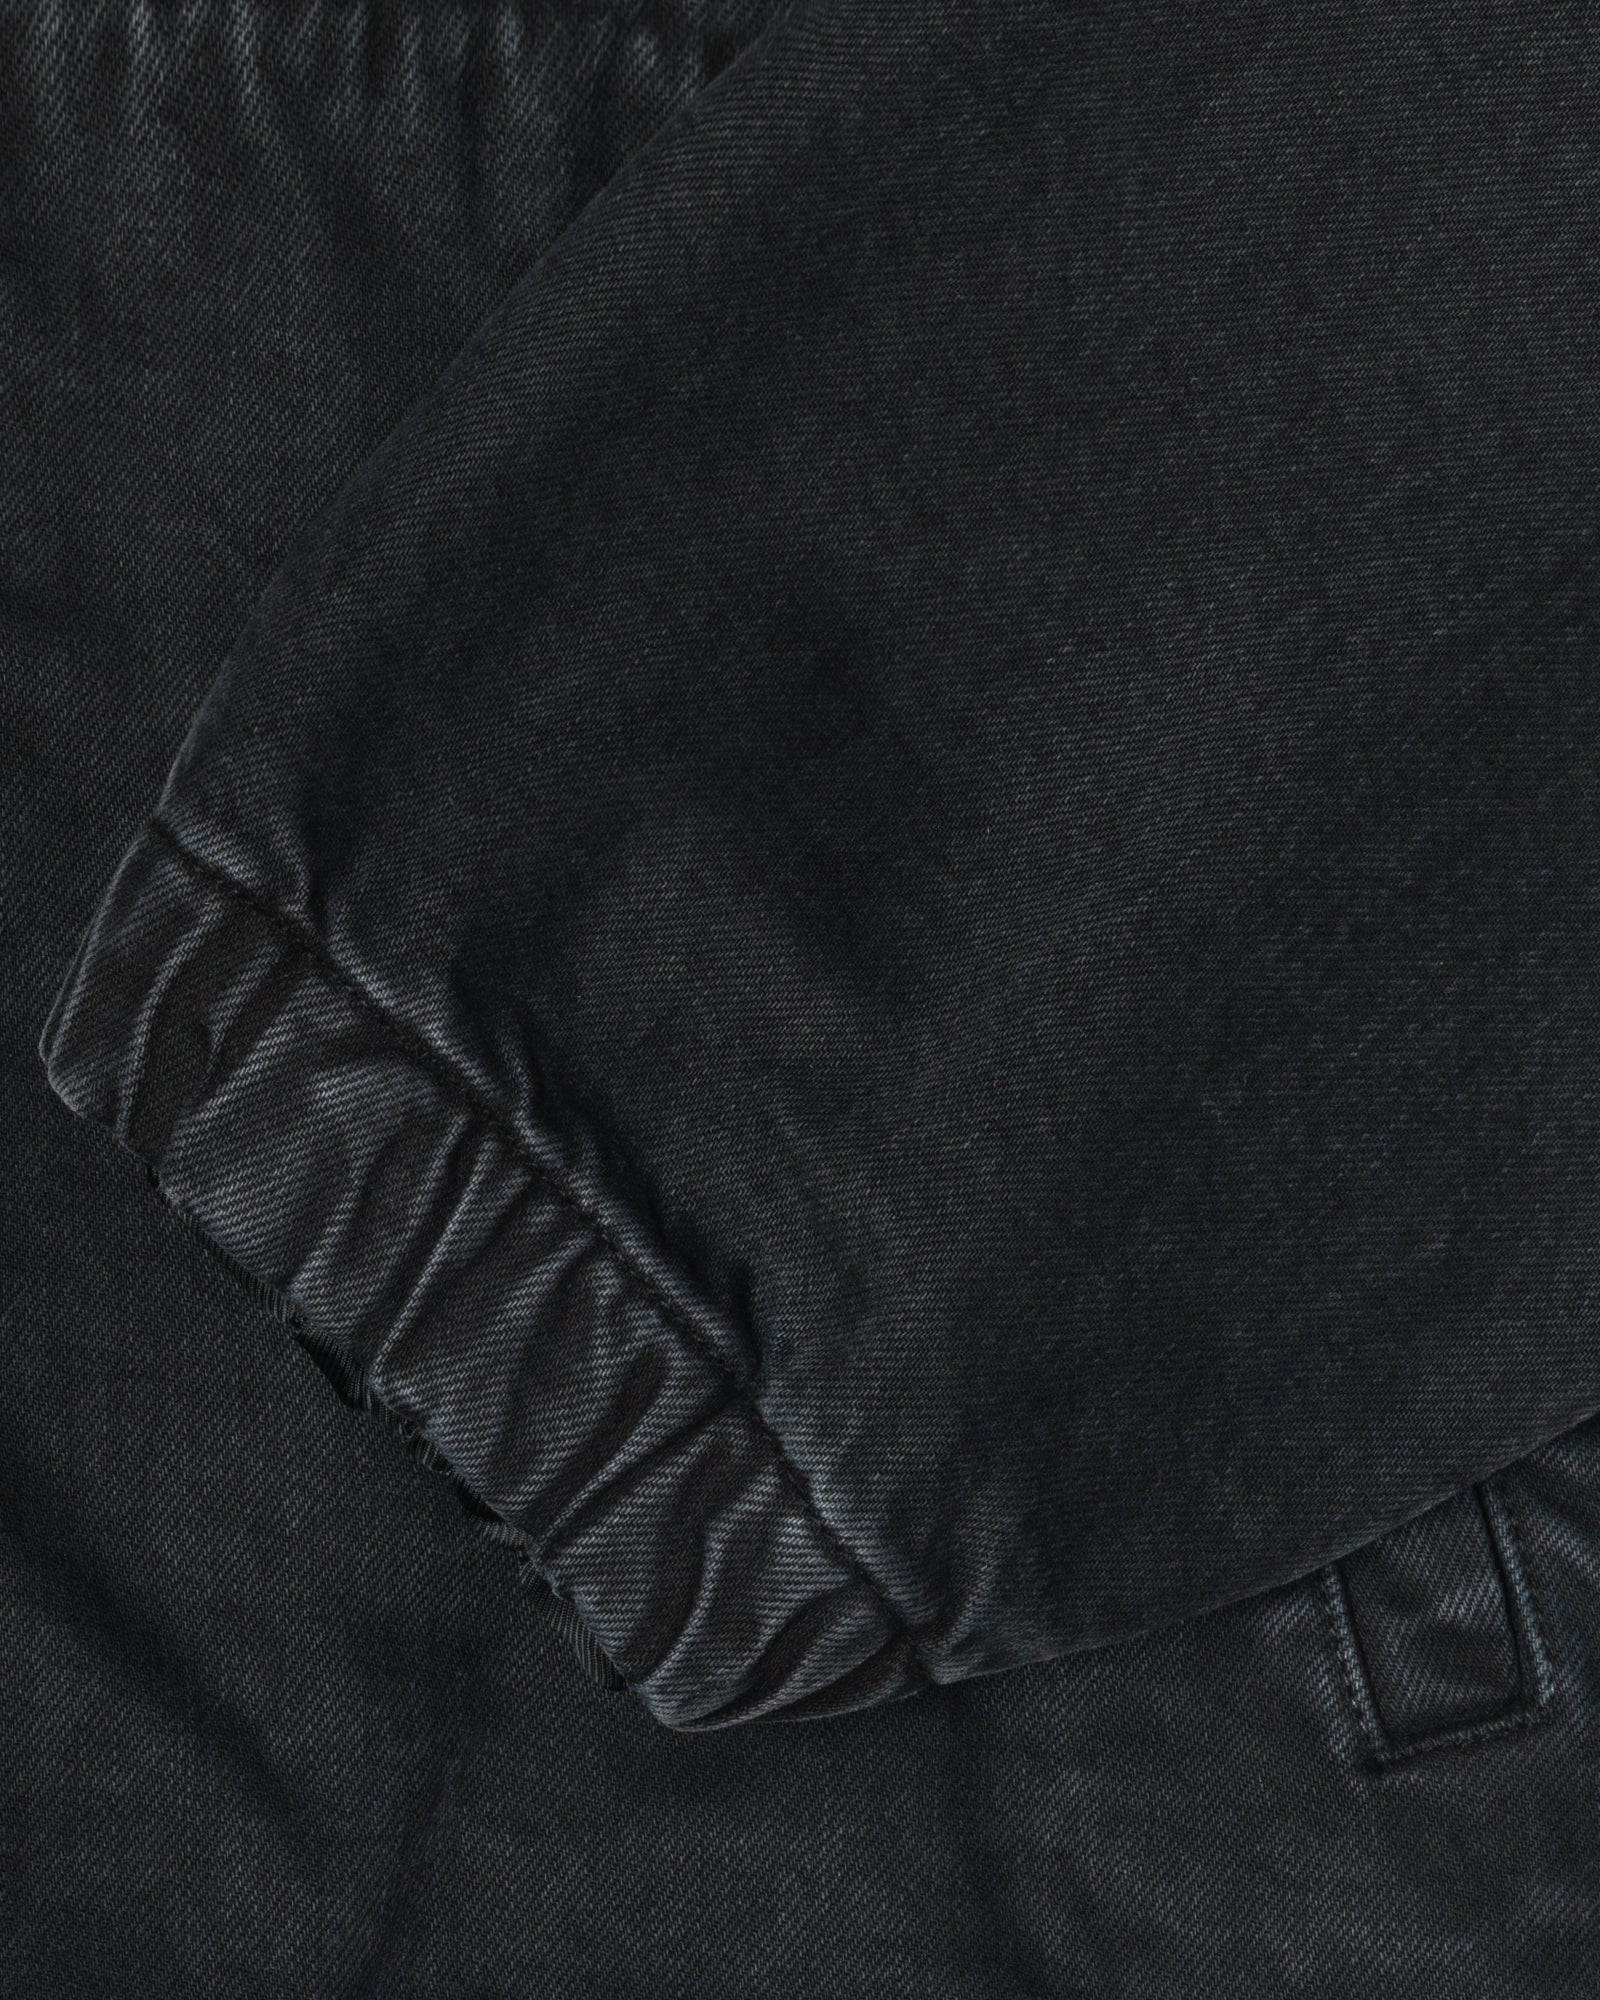 Double Dye Work Jacket - Unisex Jackets & Outerwear | Stüssy